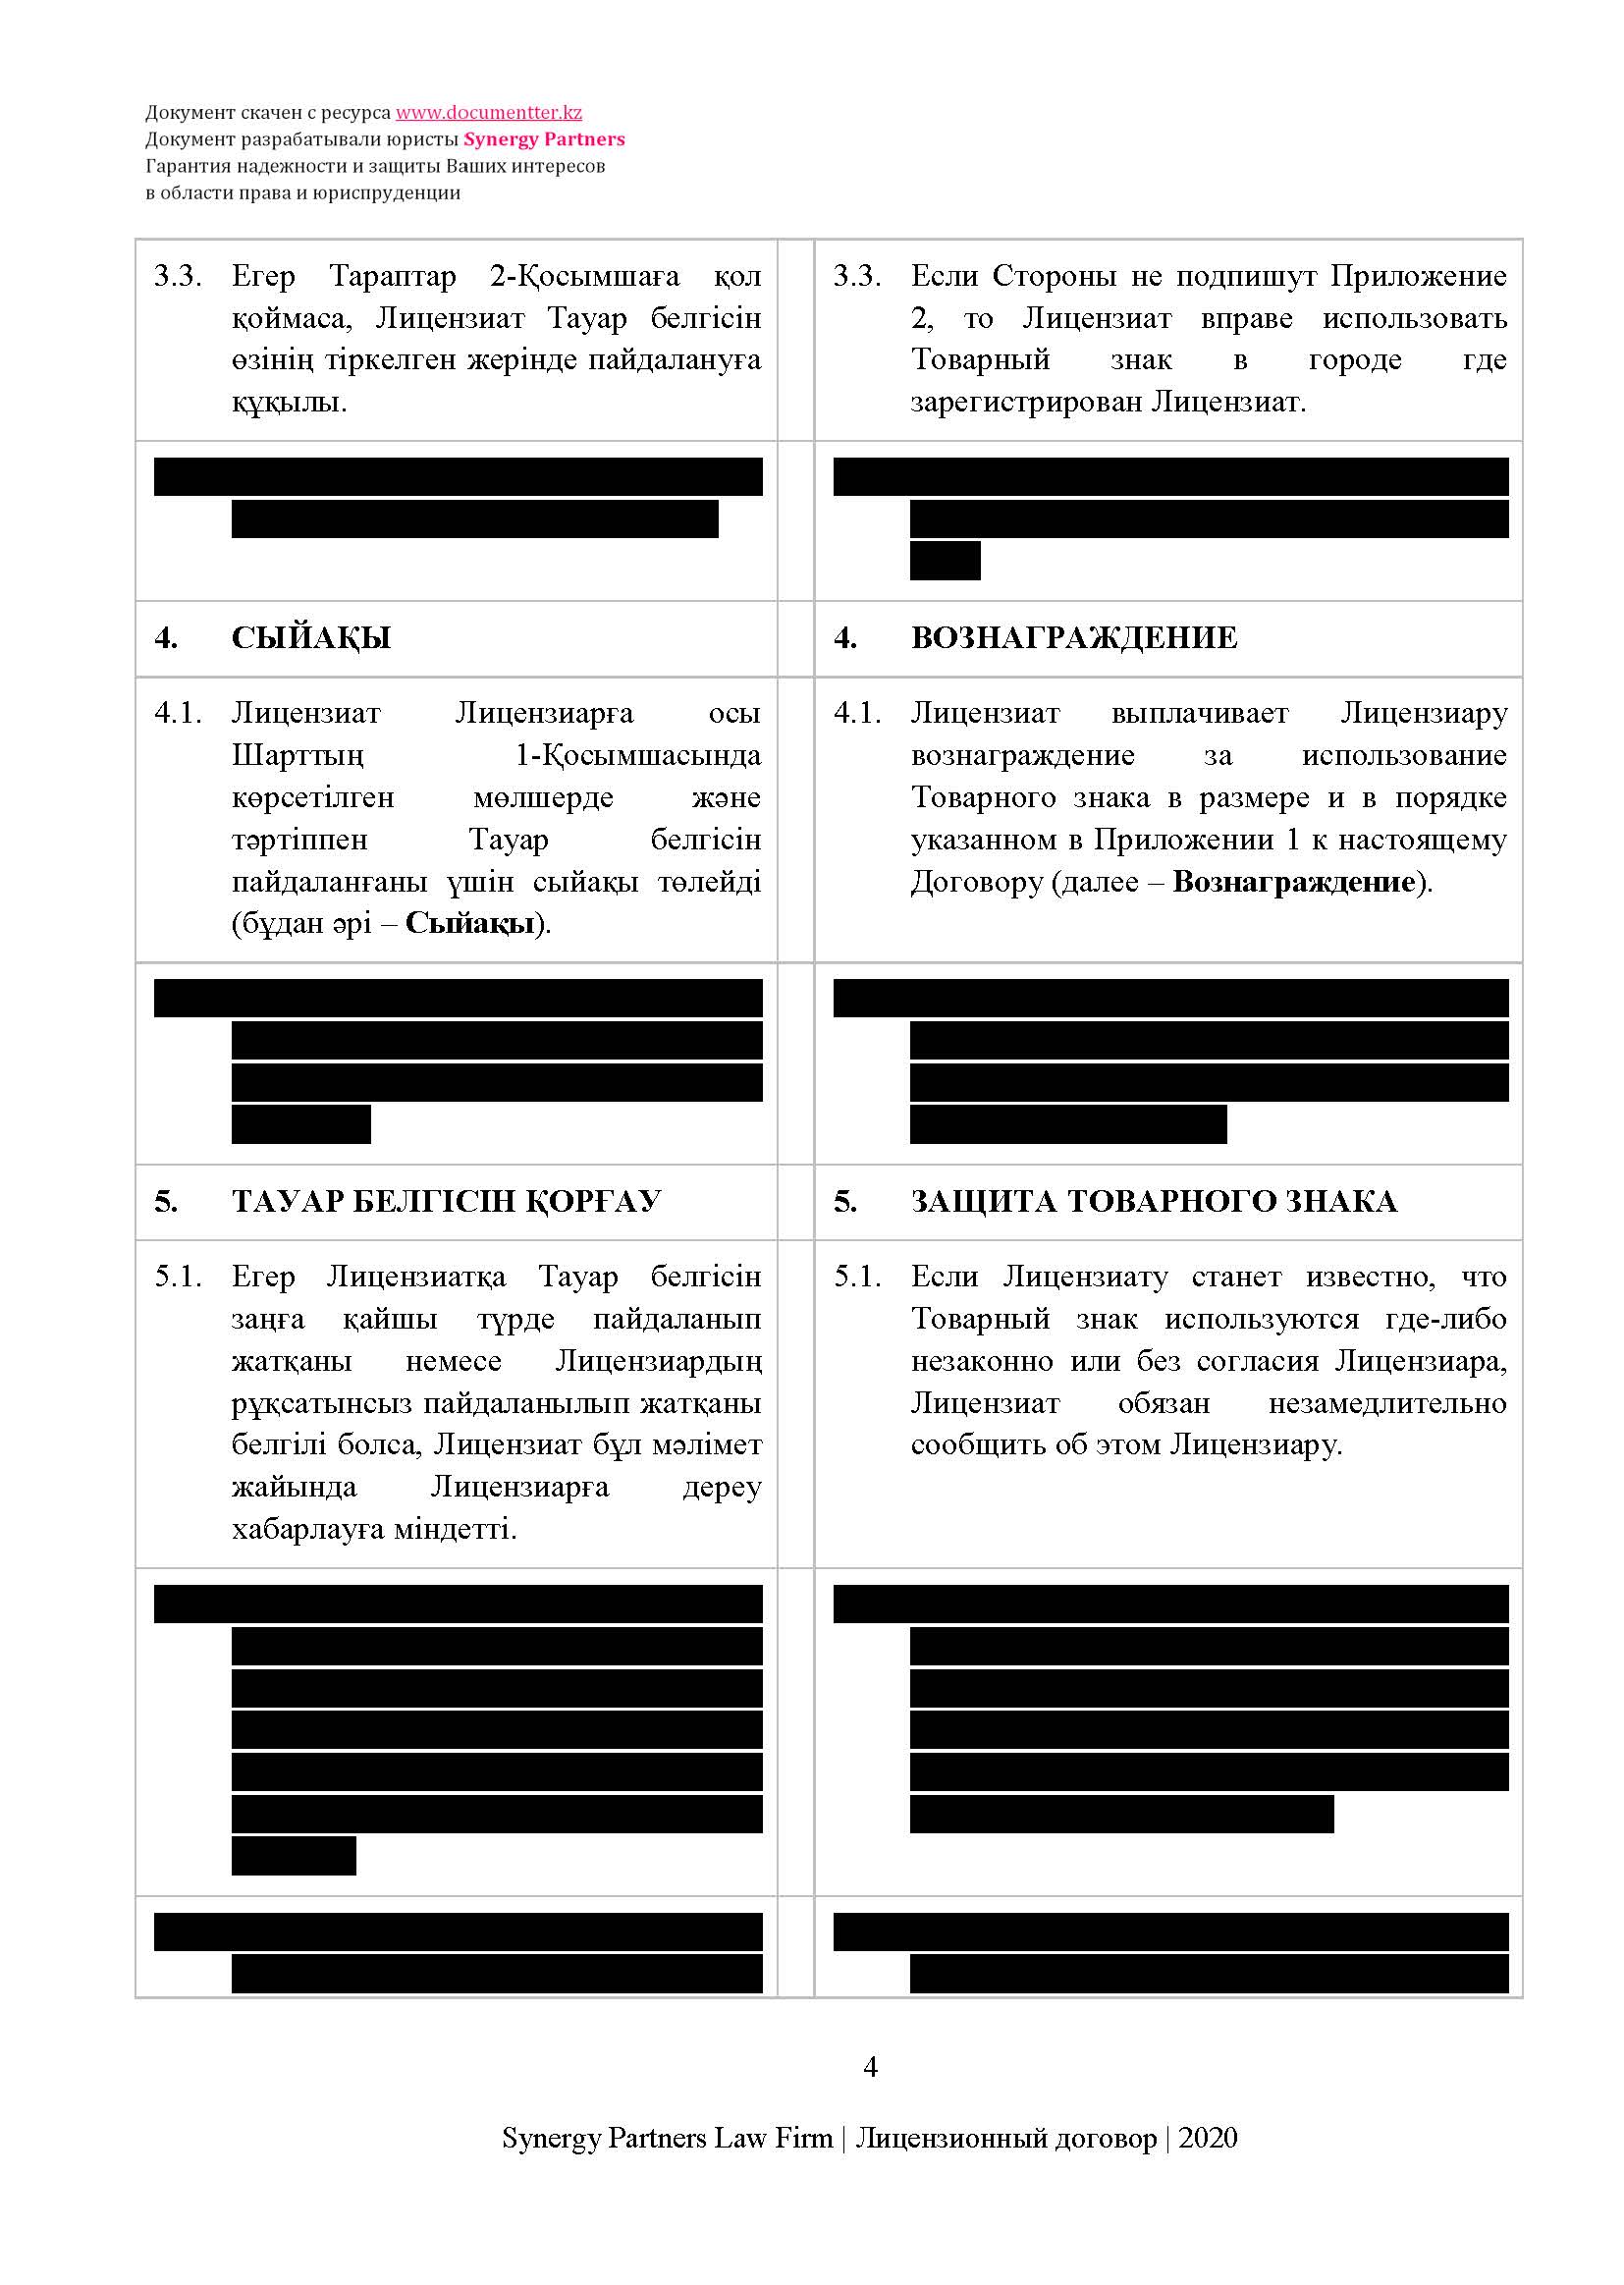 Лицензионный договор на неисключительное использование товарного знака (роялти) | documentterkz.com в Казахстане